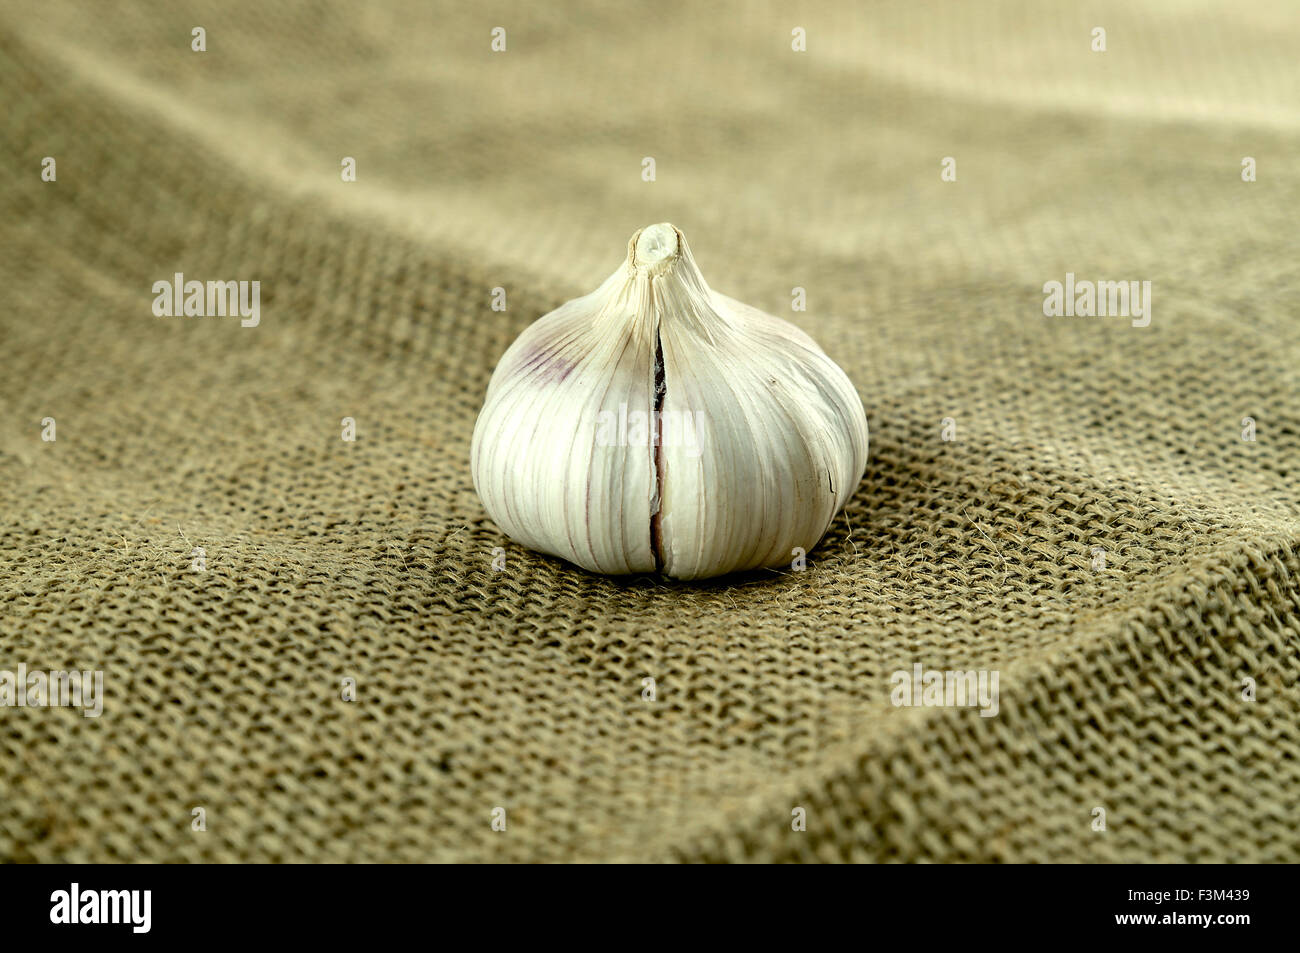 Spicchio di aglio sulla tela di raccolto Foto Stock